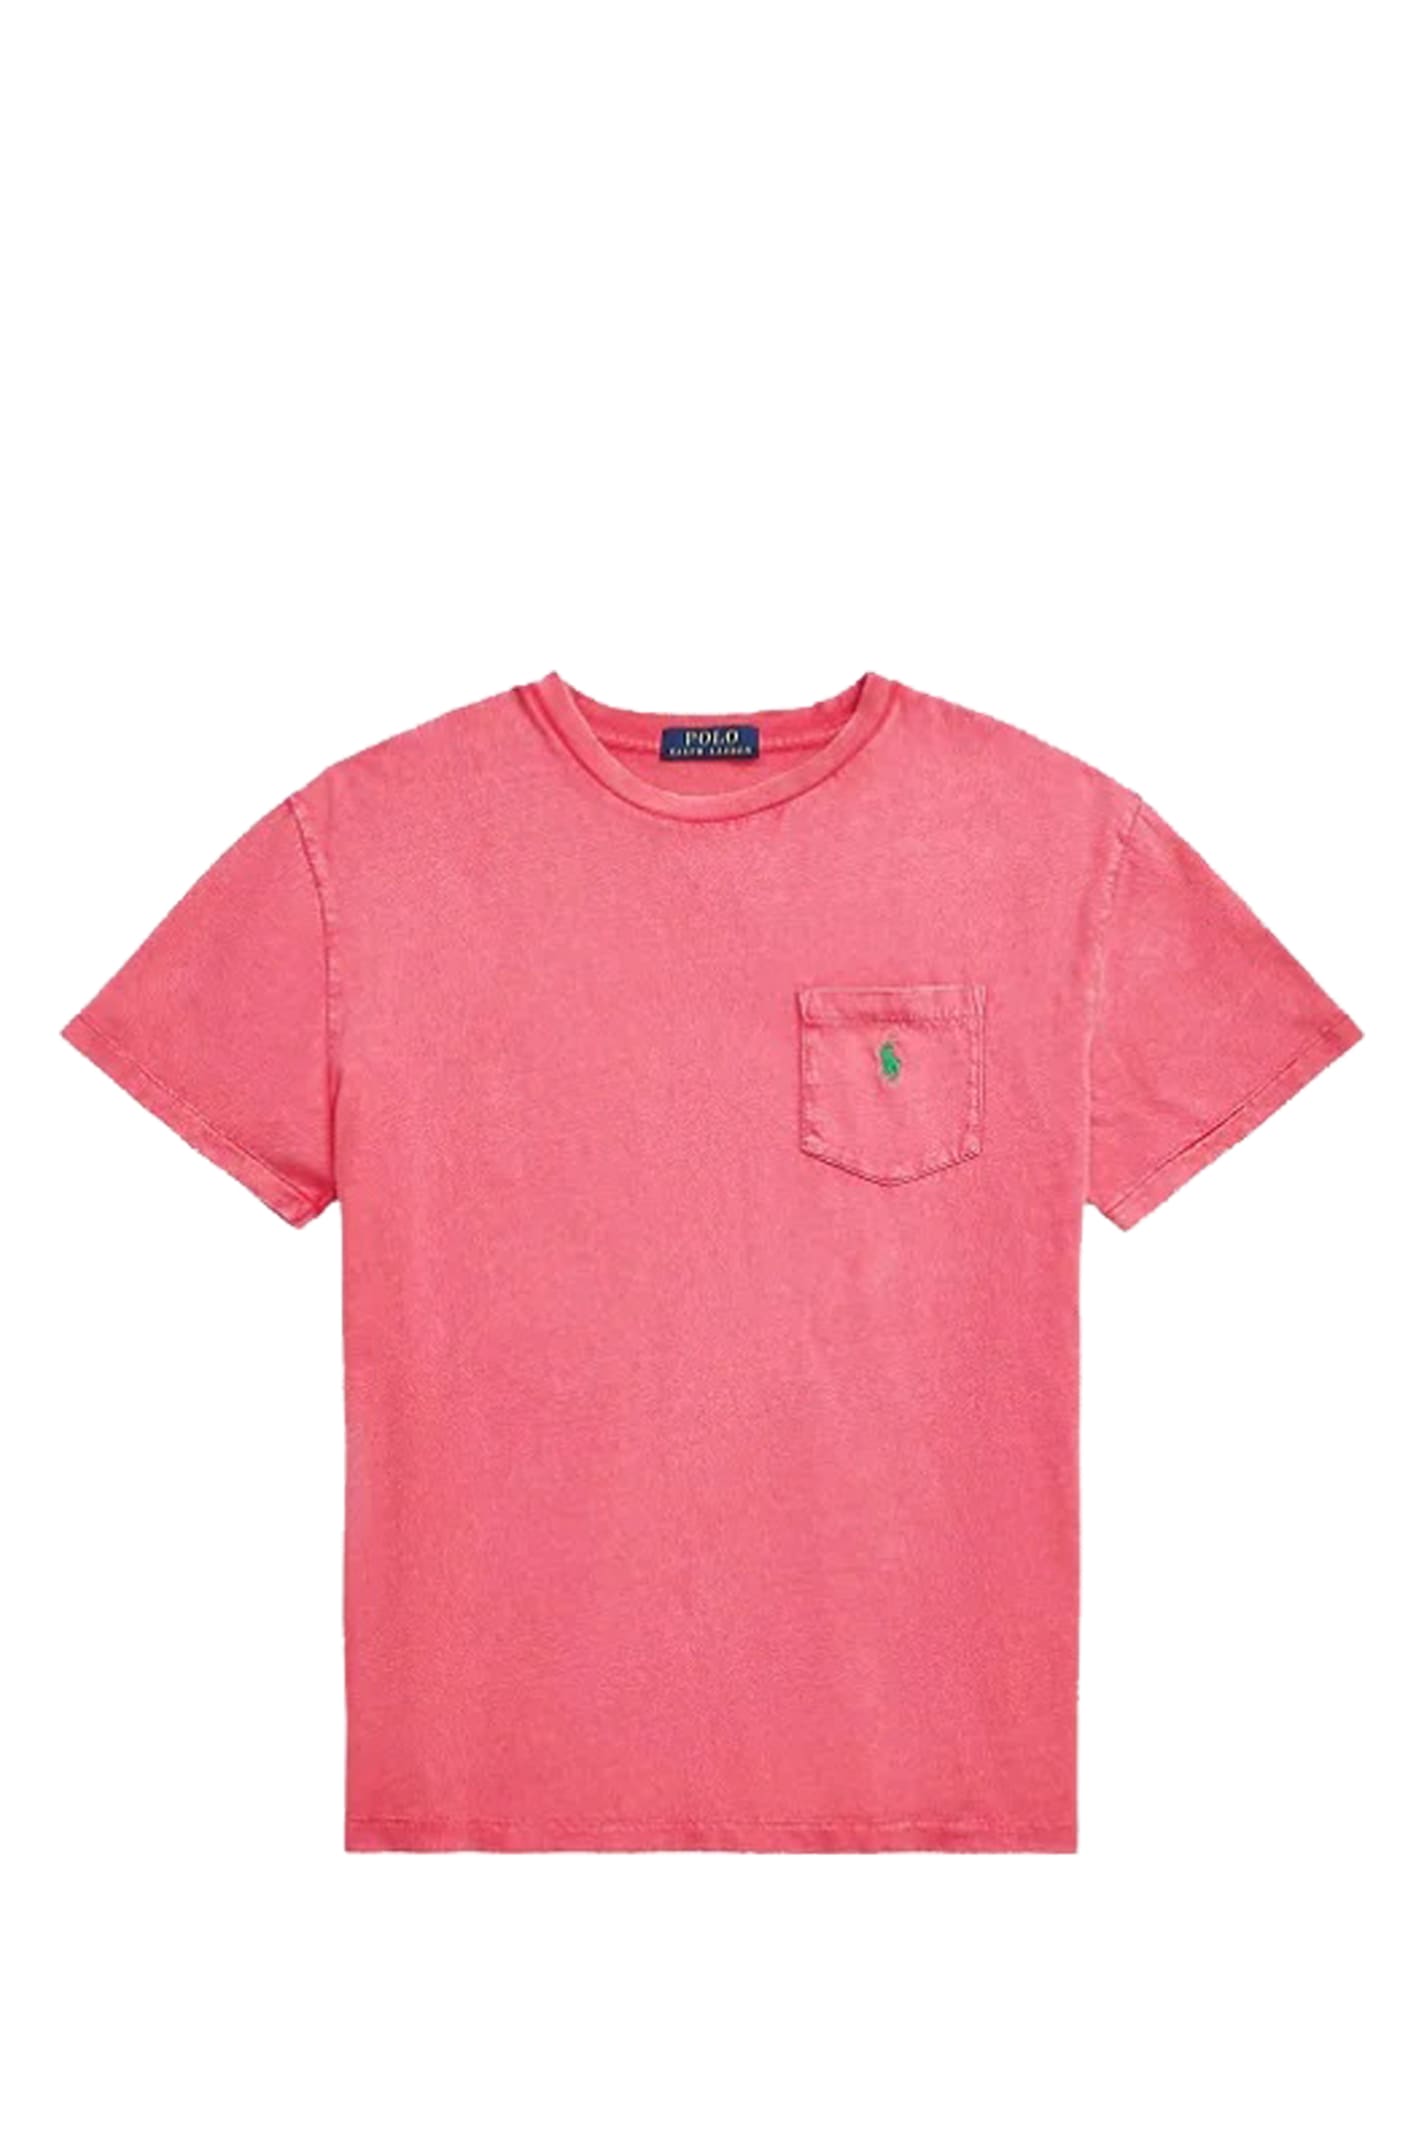 Shop Polo Ralph Lauren T-shirt